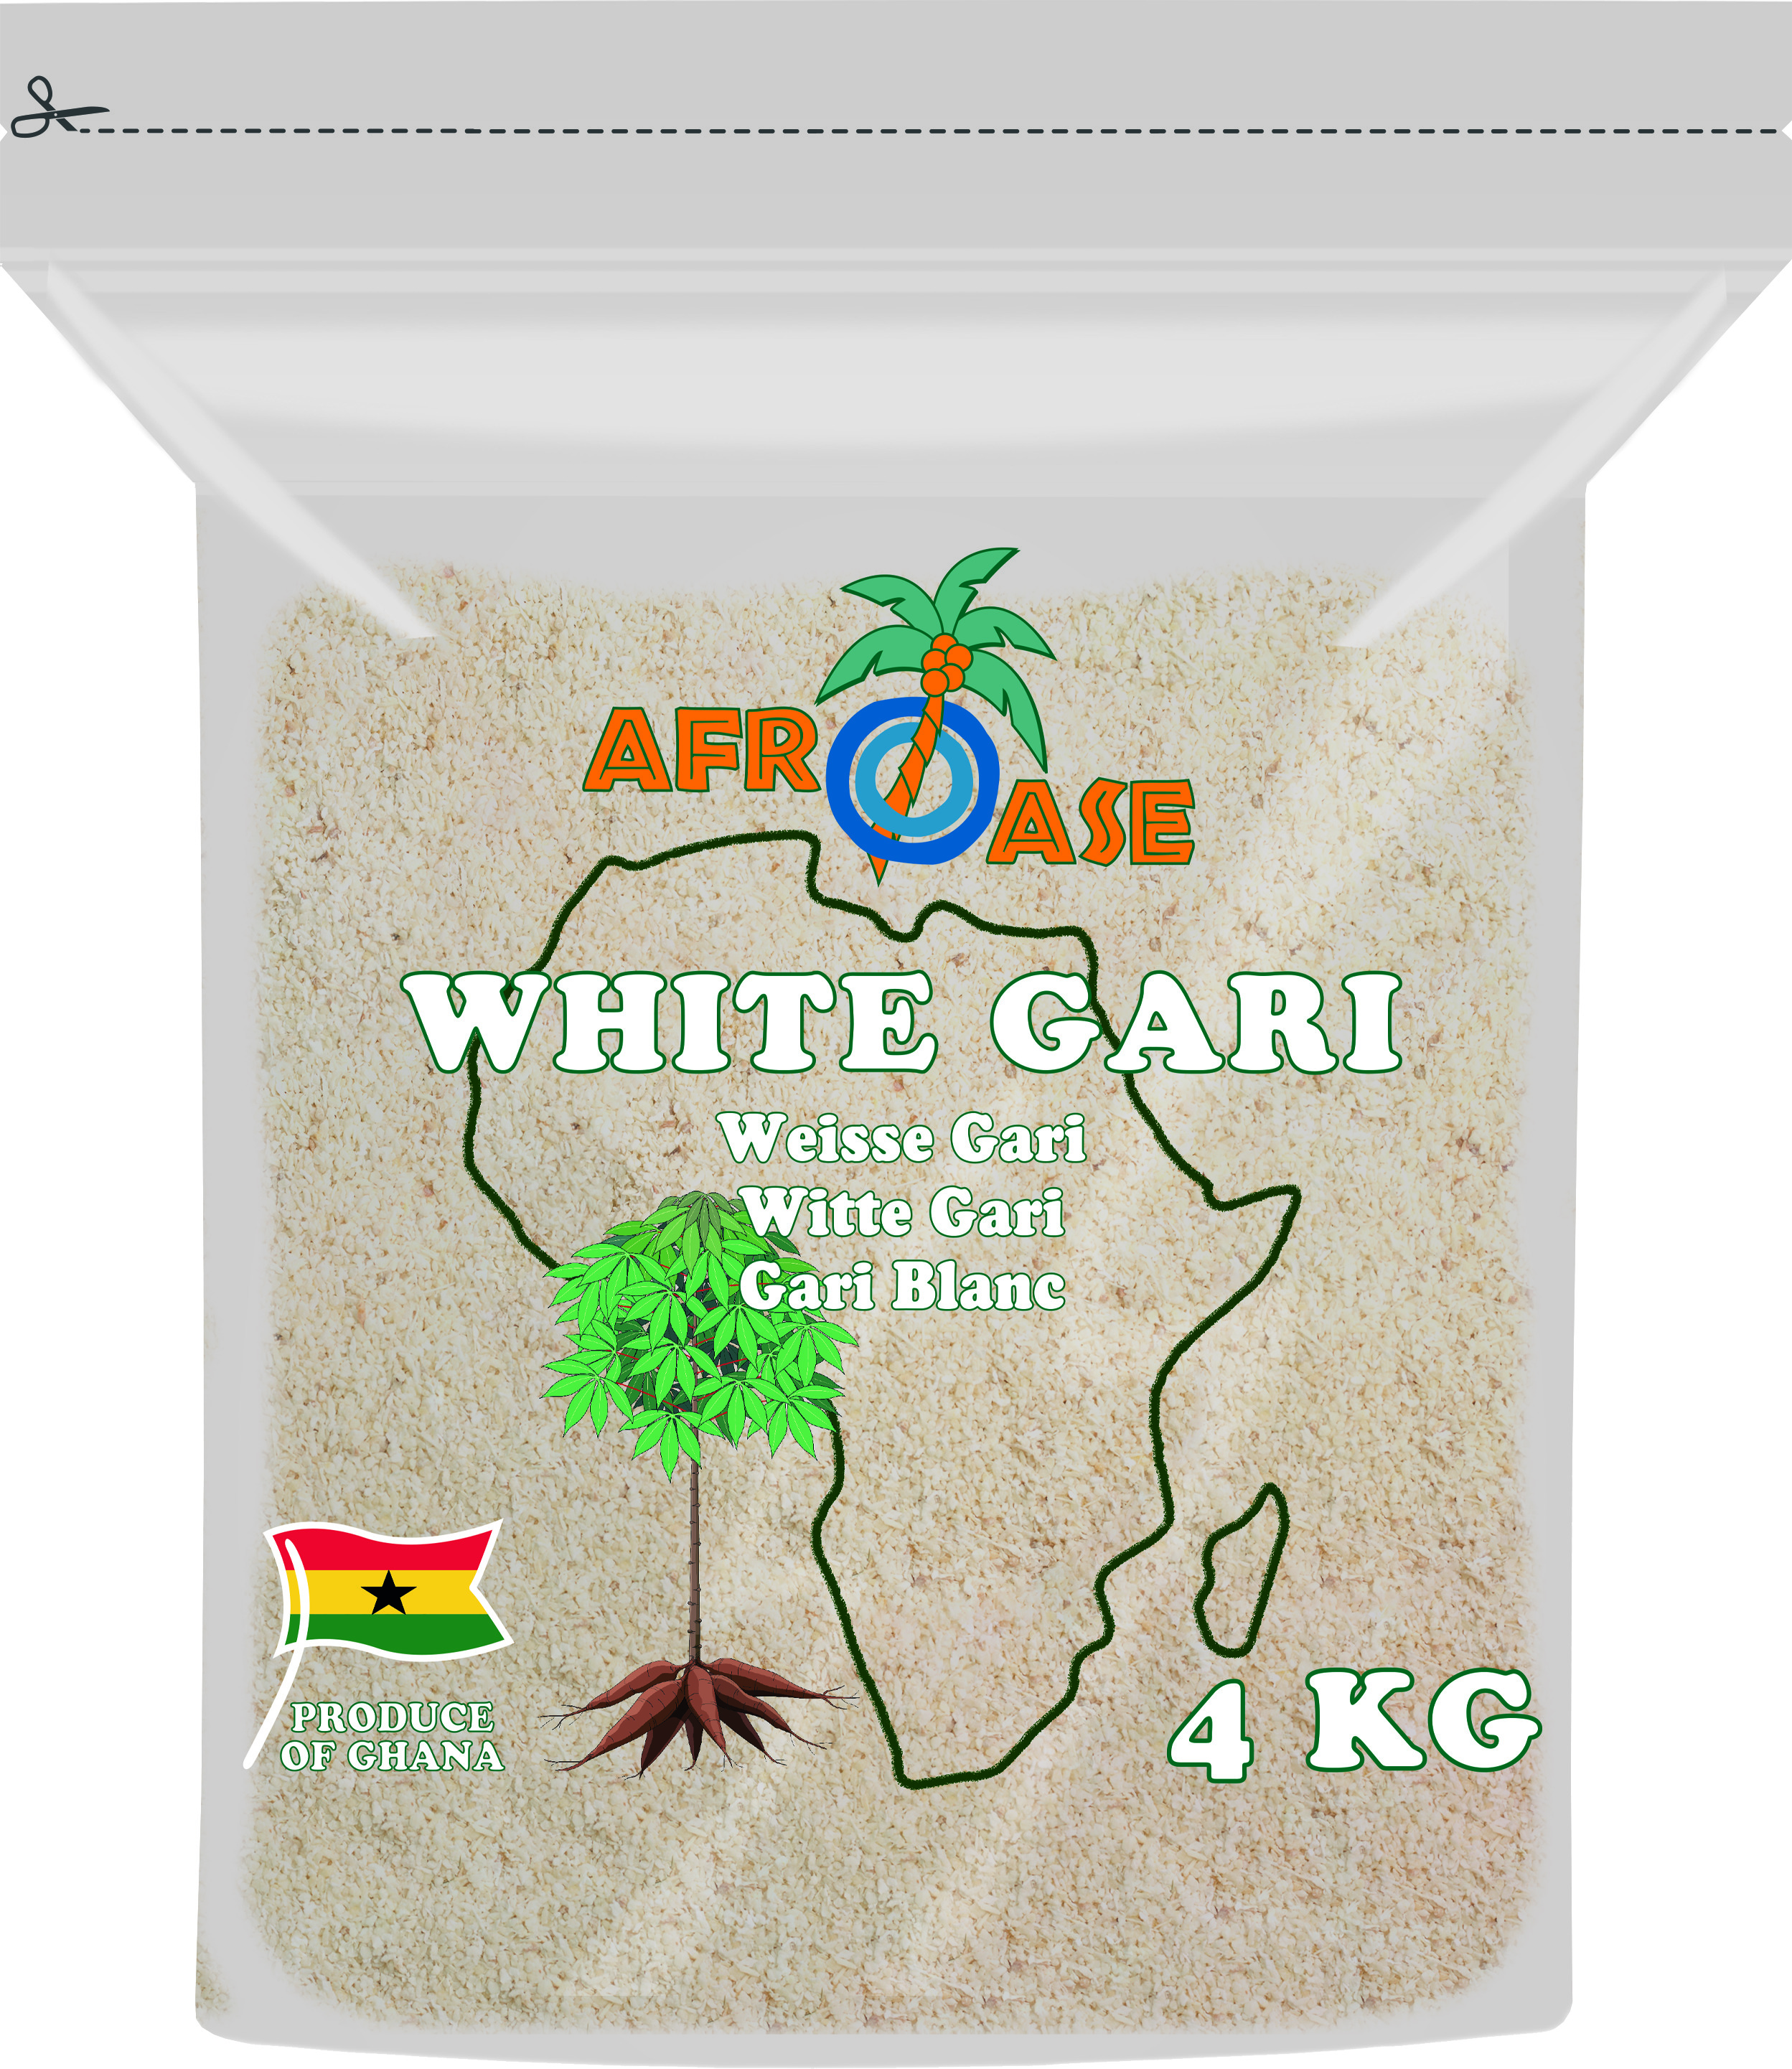 White Garlic 3 X 4 Kg - Afroase